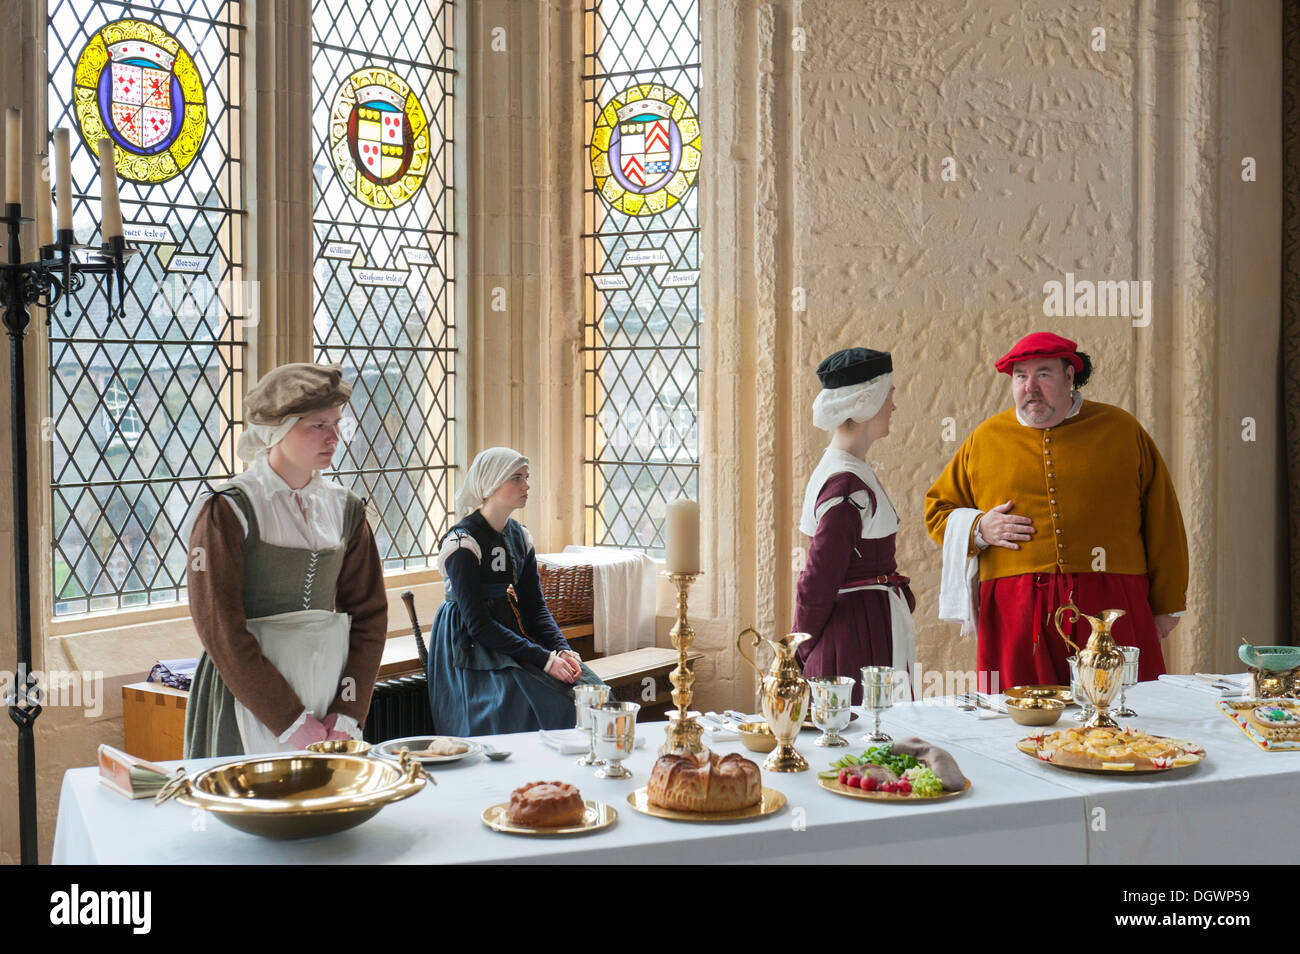 Drama, set Tisch, vier Personen, mittelalterliche Kleidung, Stirling Castle Palace, Stirling, Schottland, Vereinigtes Königreich Stockfoto